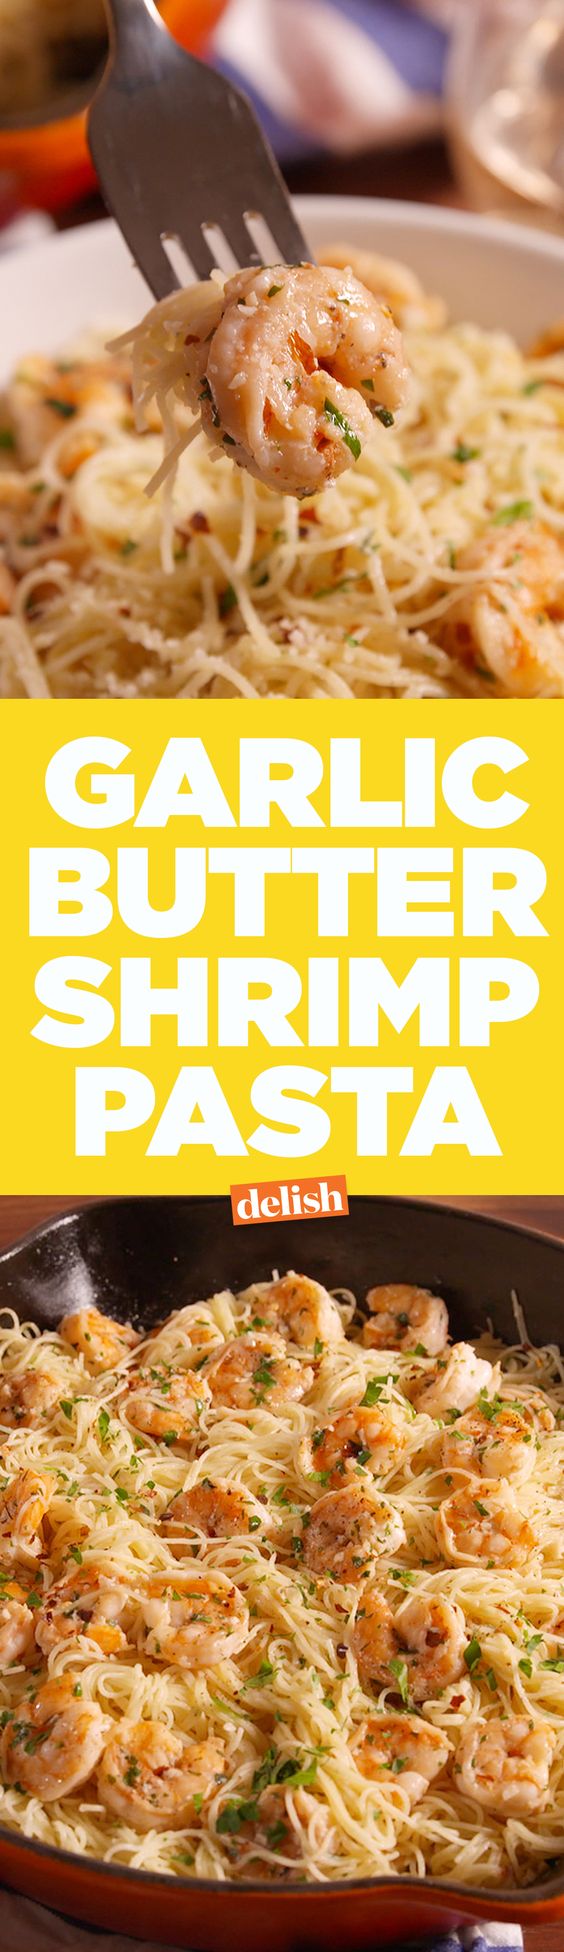 Garlic Butter Shrimp Pasta